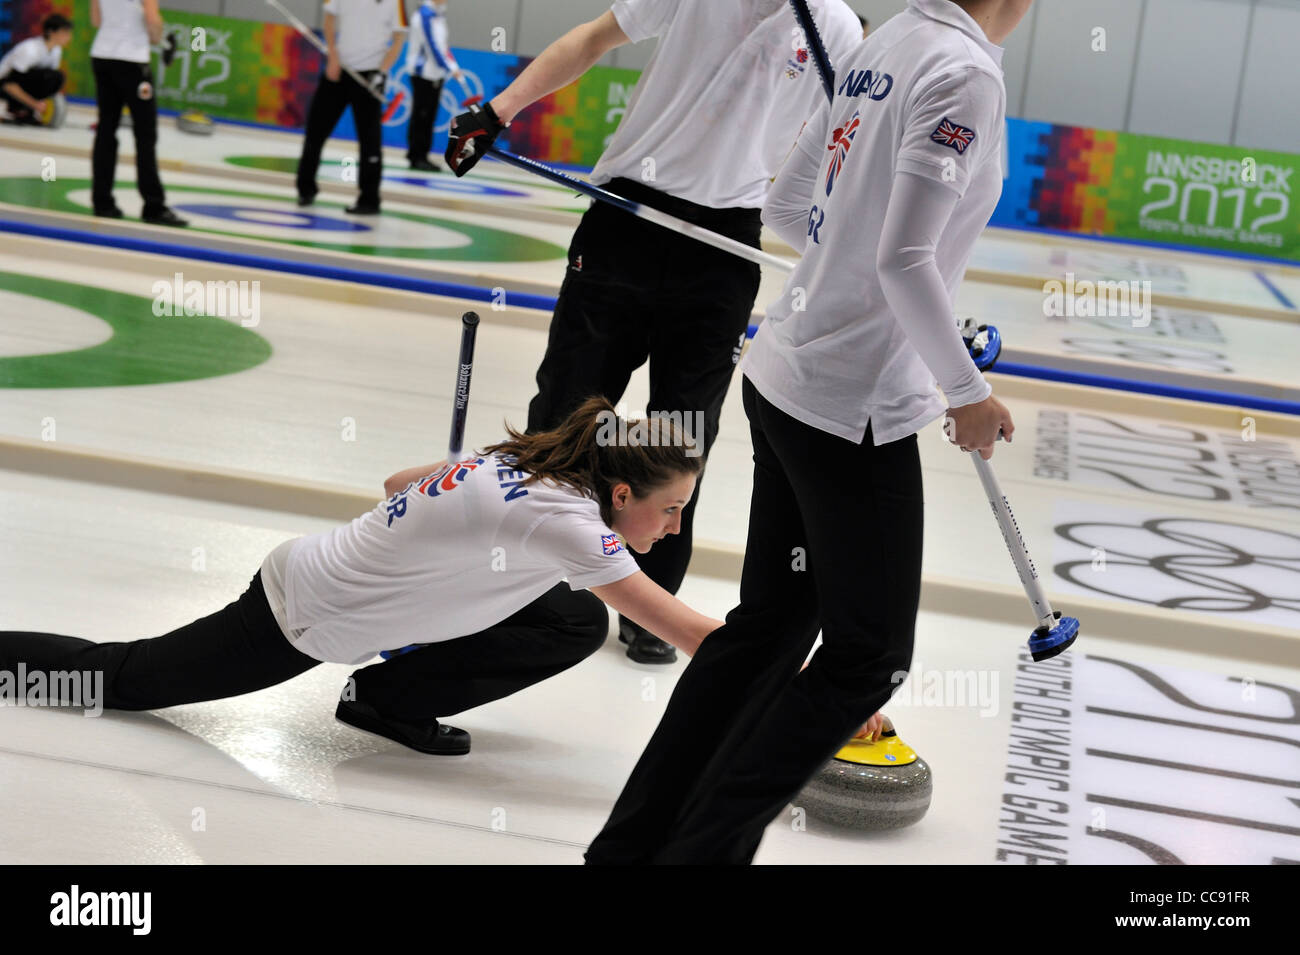 Grande-bretagne l'équipe perdre 8-2 pour le Canada dans la manche d'ouverture de l'événement de curling à la première des Jeux Olympiques d'hiver de la Jeunesse Banque D'Images